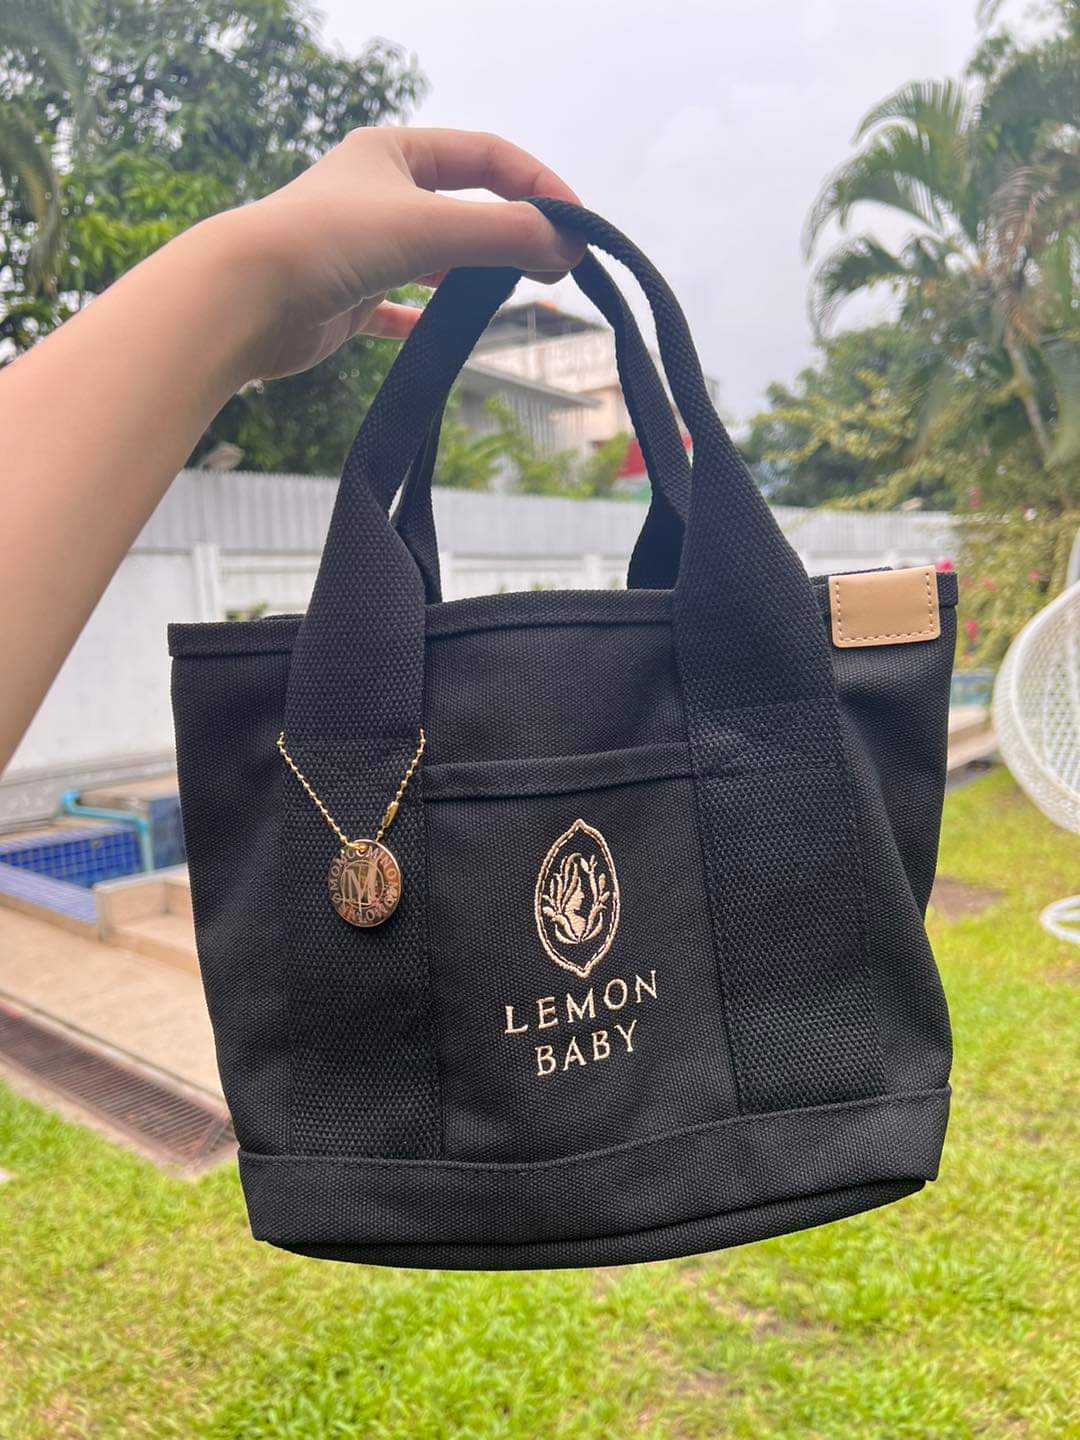 
                  
                    Lemonbaby Hand Bag - Lemonbaby
                  
                